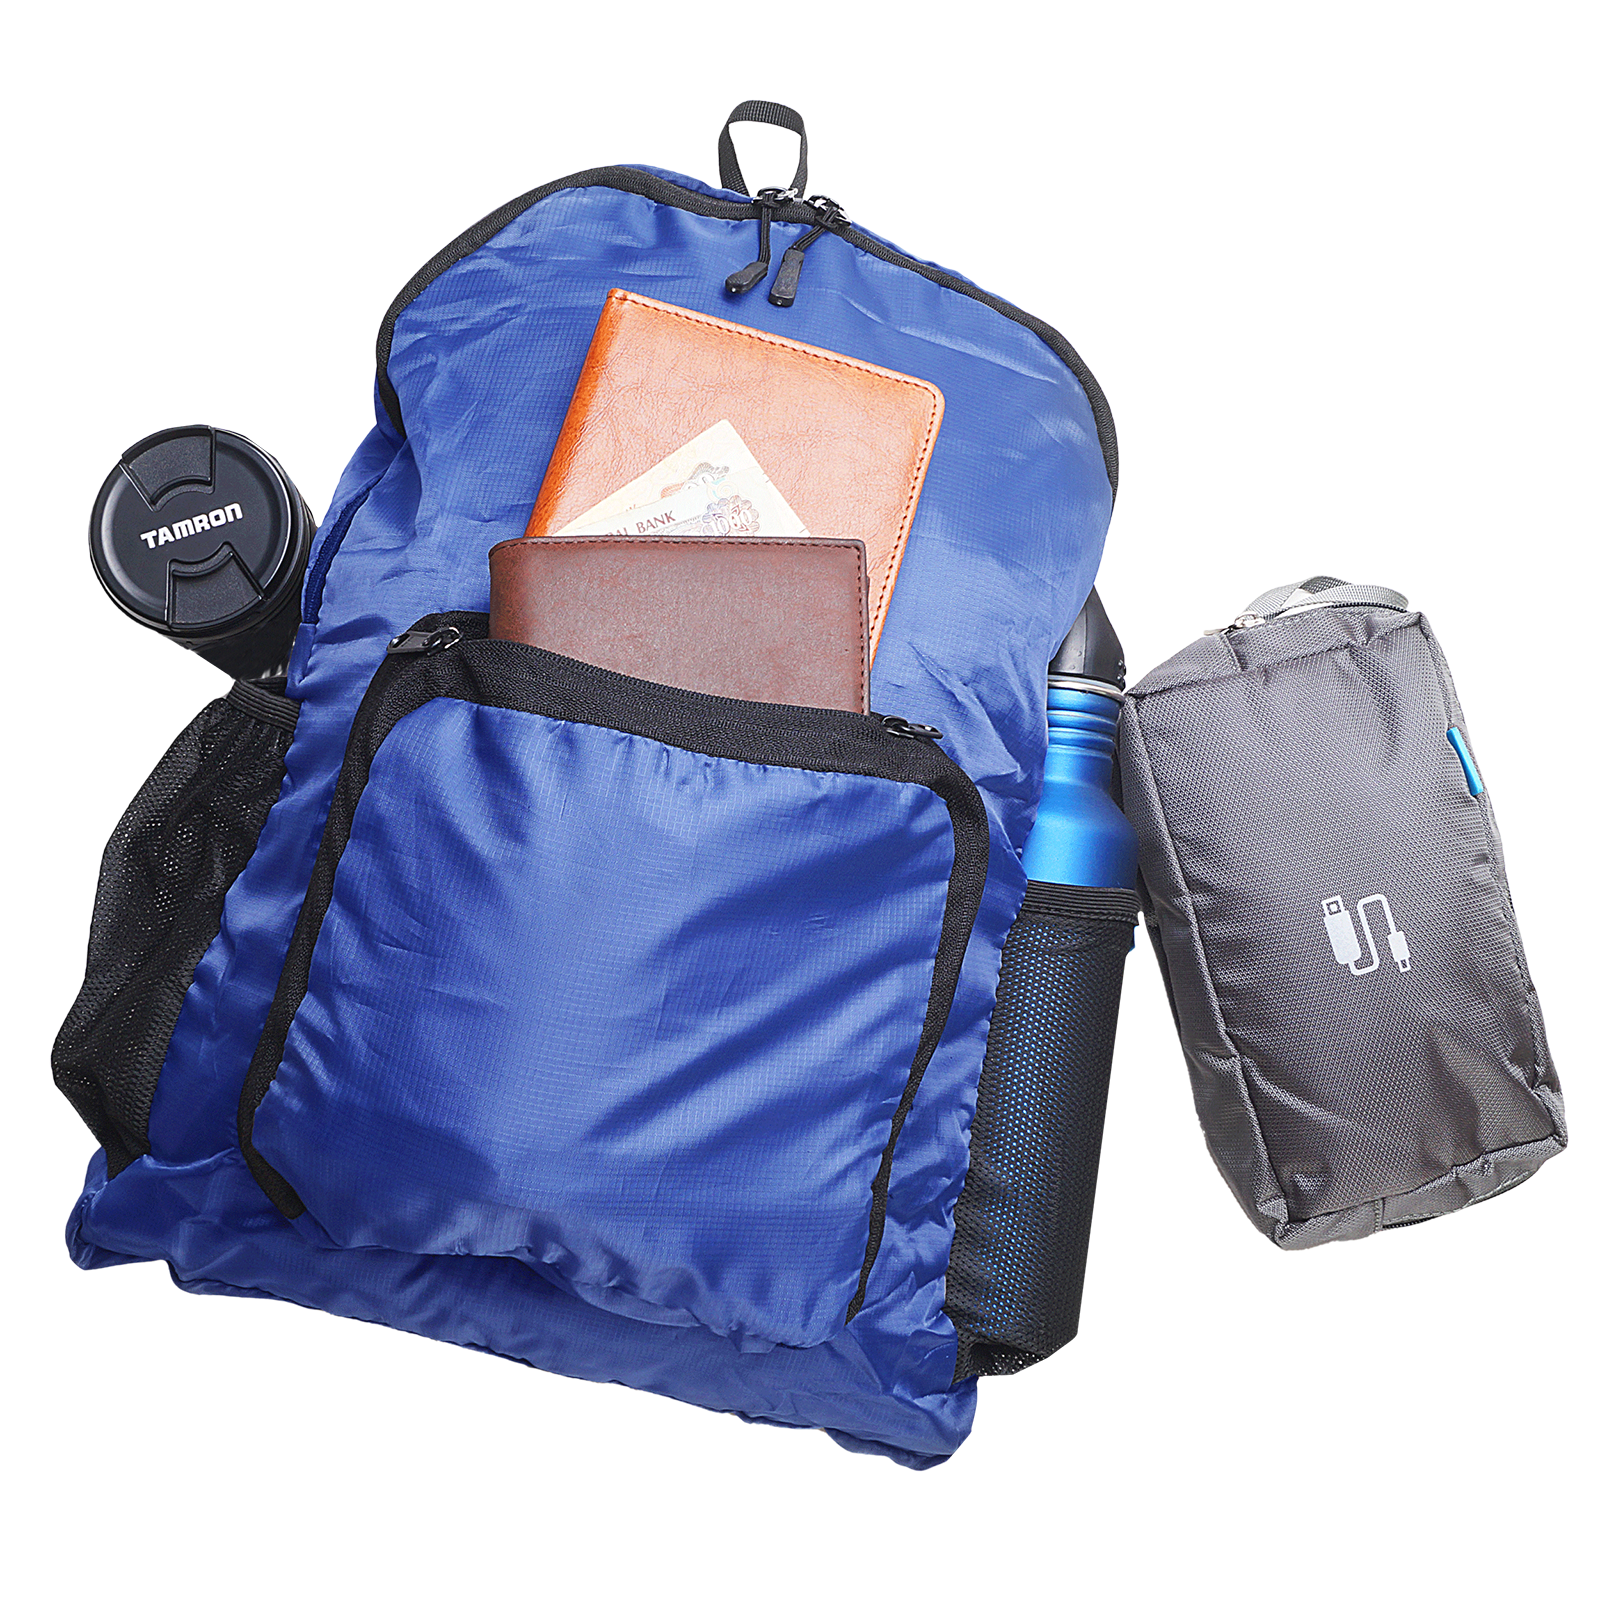 Traveldoo Lightweight Folding Backpack (CBX01002, Blue)